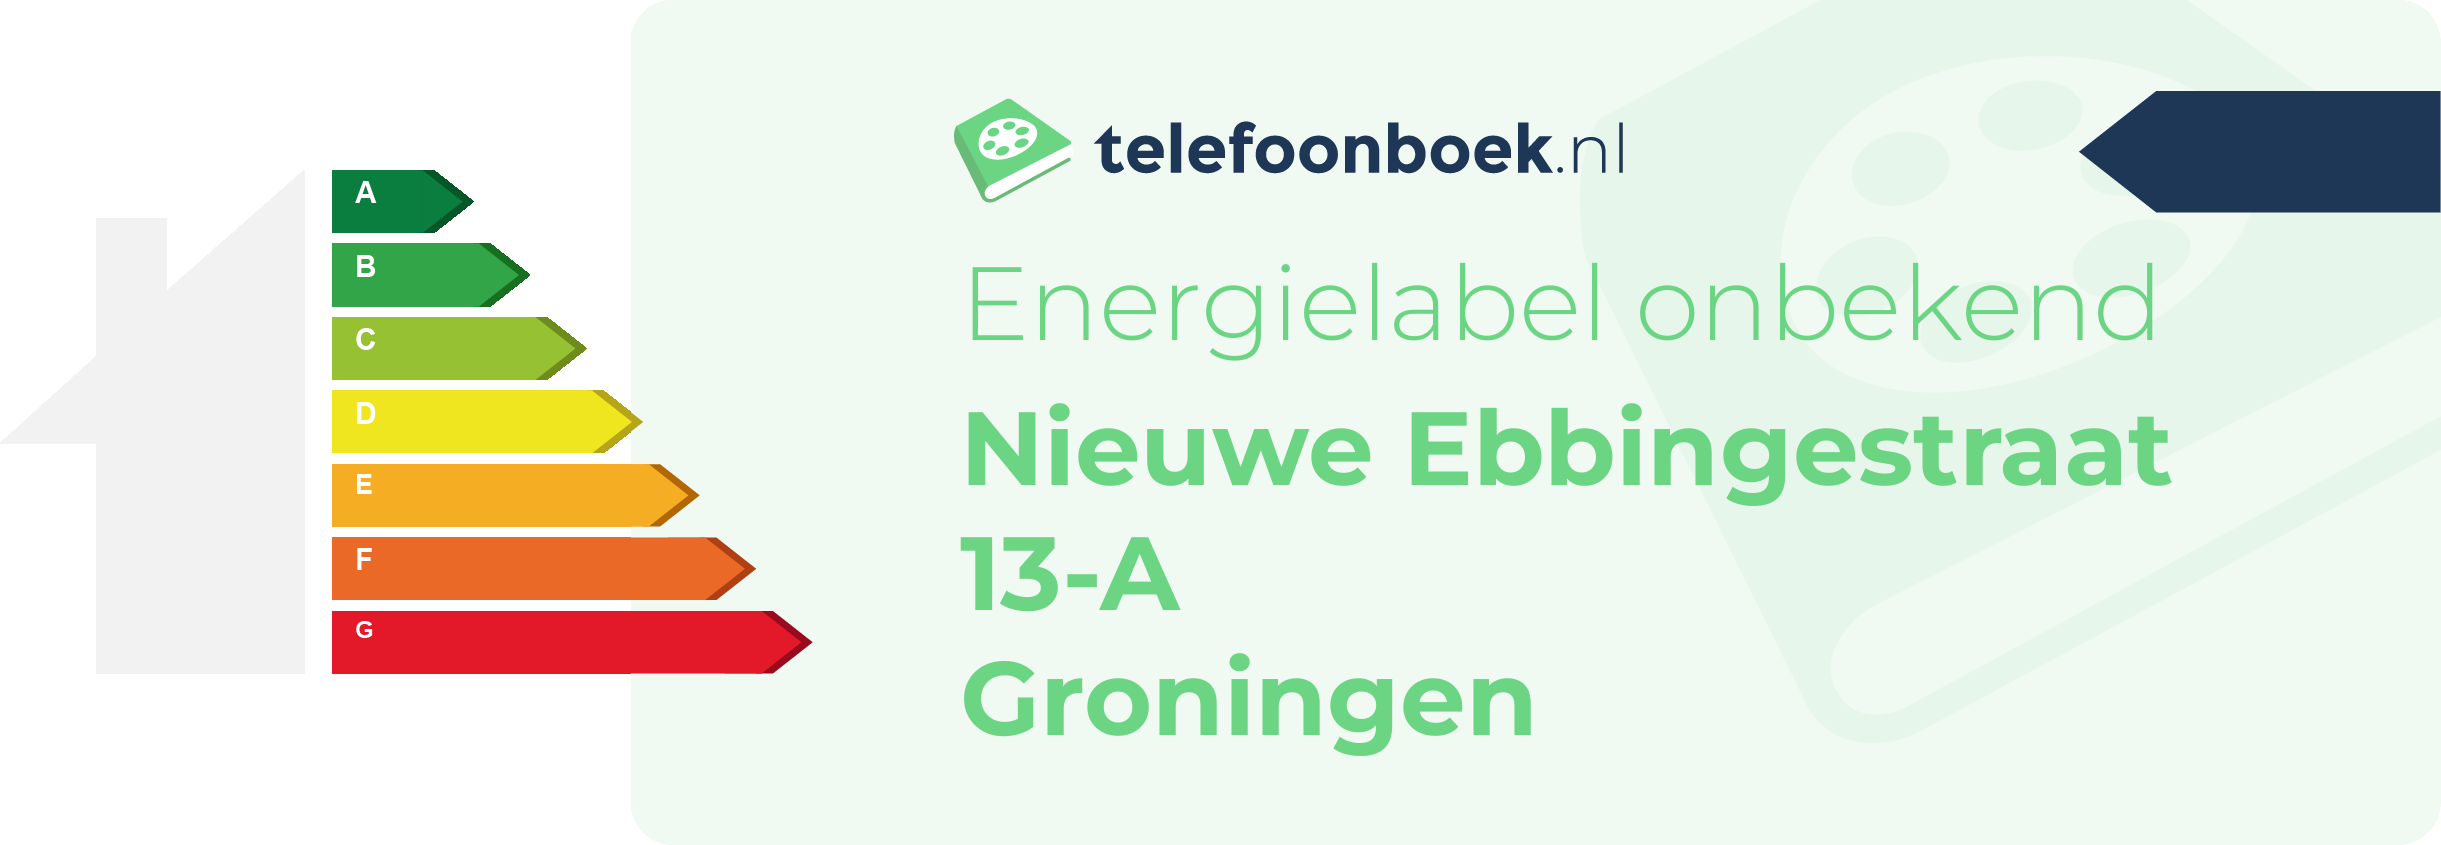 Energielabel Nieuwe Ebbingestraat 13-A Groningen